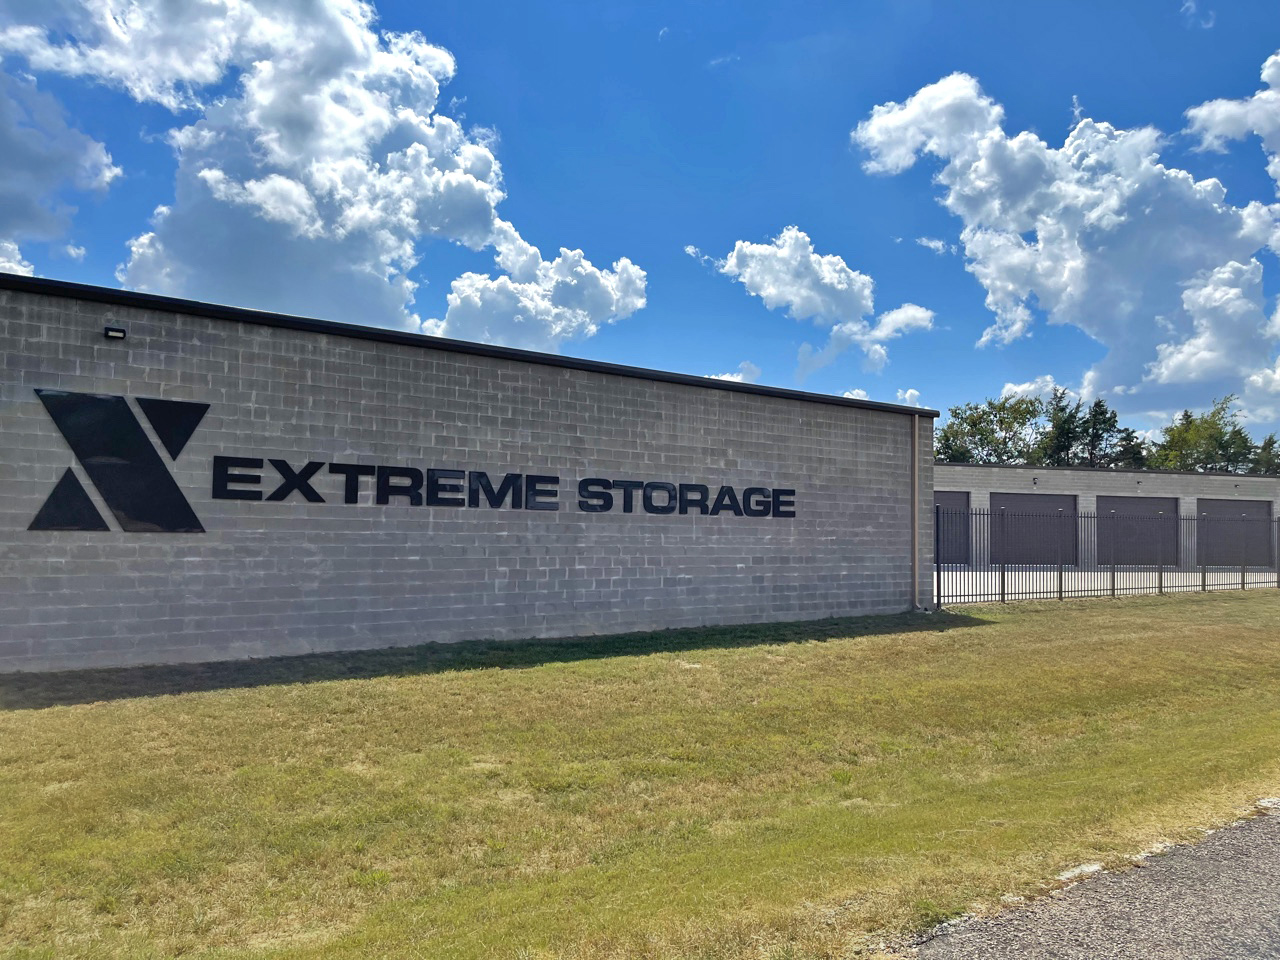 X Extreme Storage - Self Storage Facility For Sale by The Karr Self Storage Team